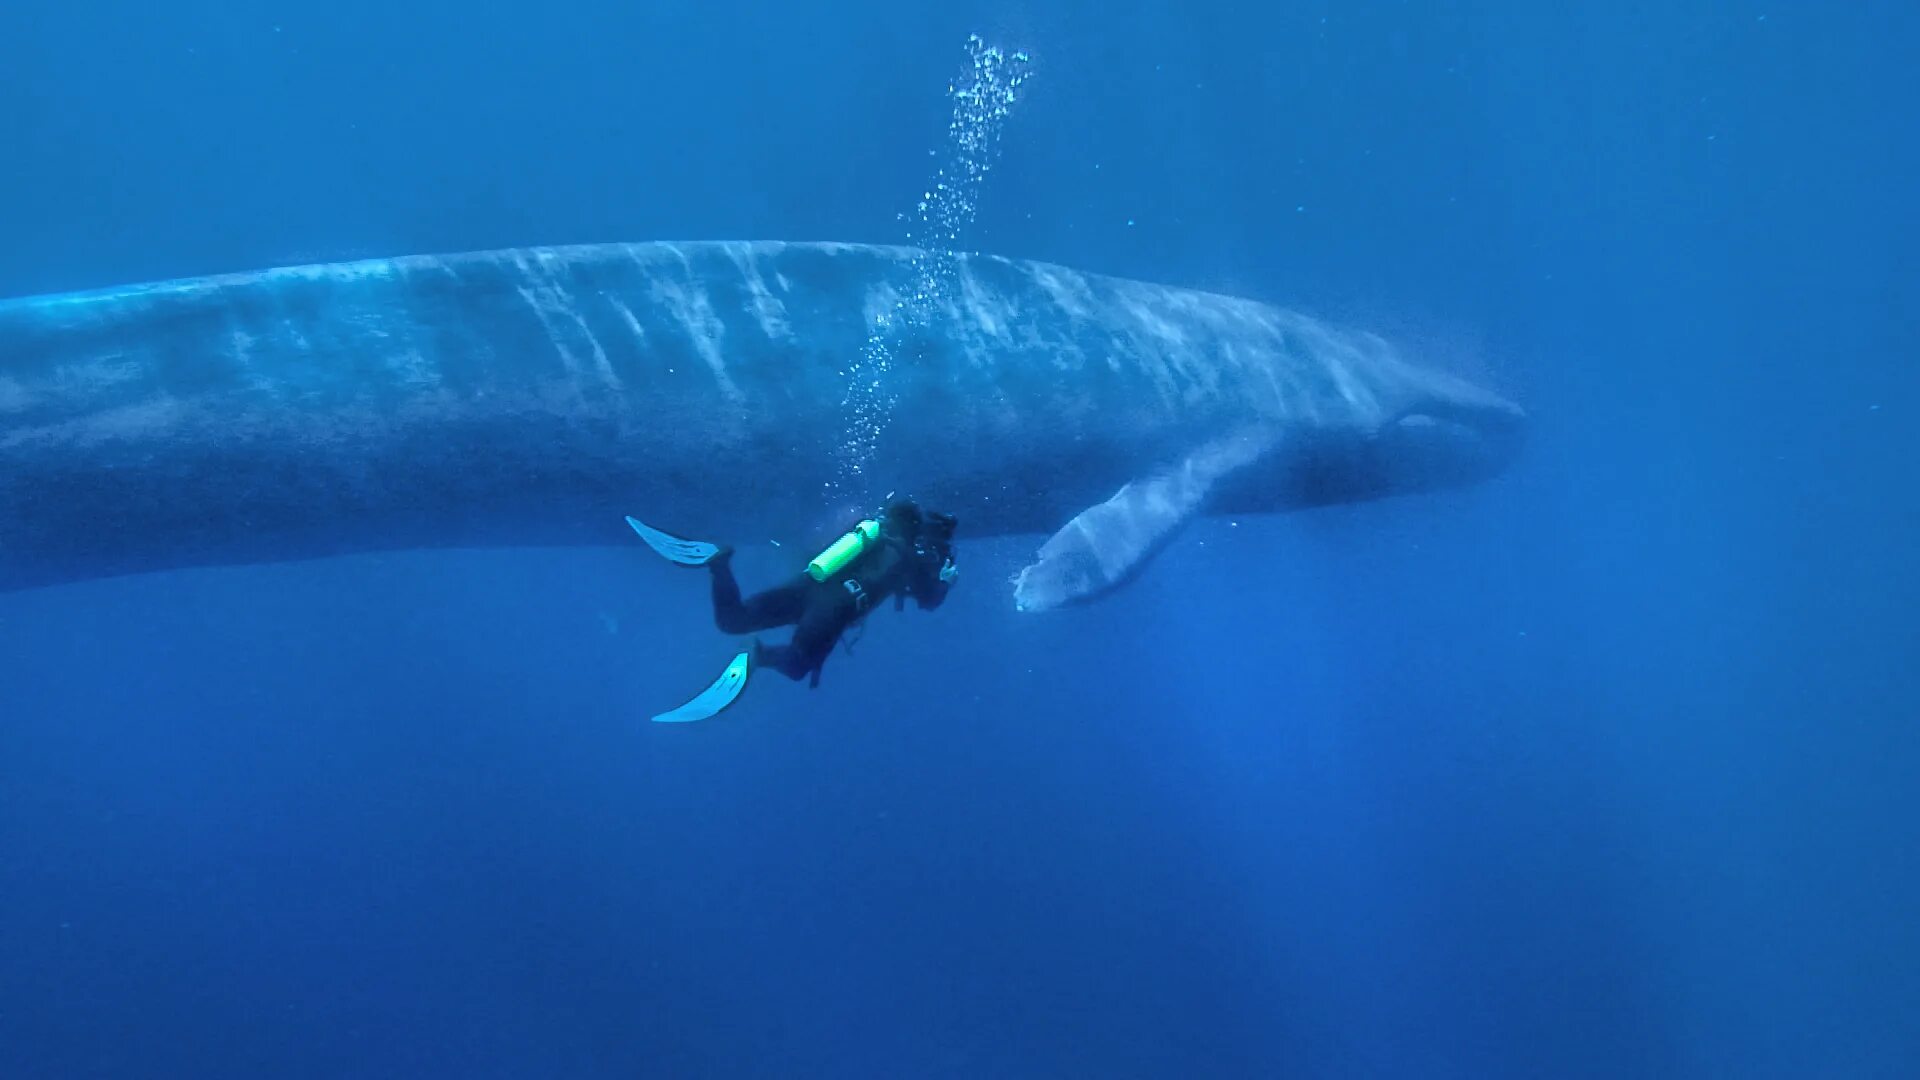 Синий размер. Синий кит голубой кит блювал. Синий кит 33 метра. Синий кит ≈ 150 тонн. Синий кит самый большой кит.